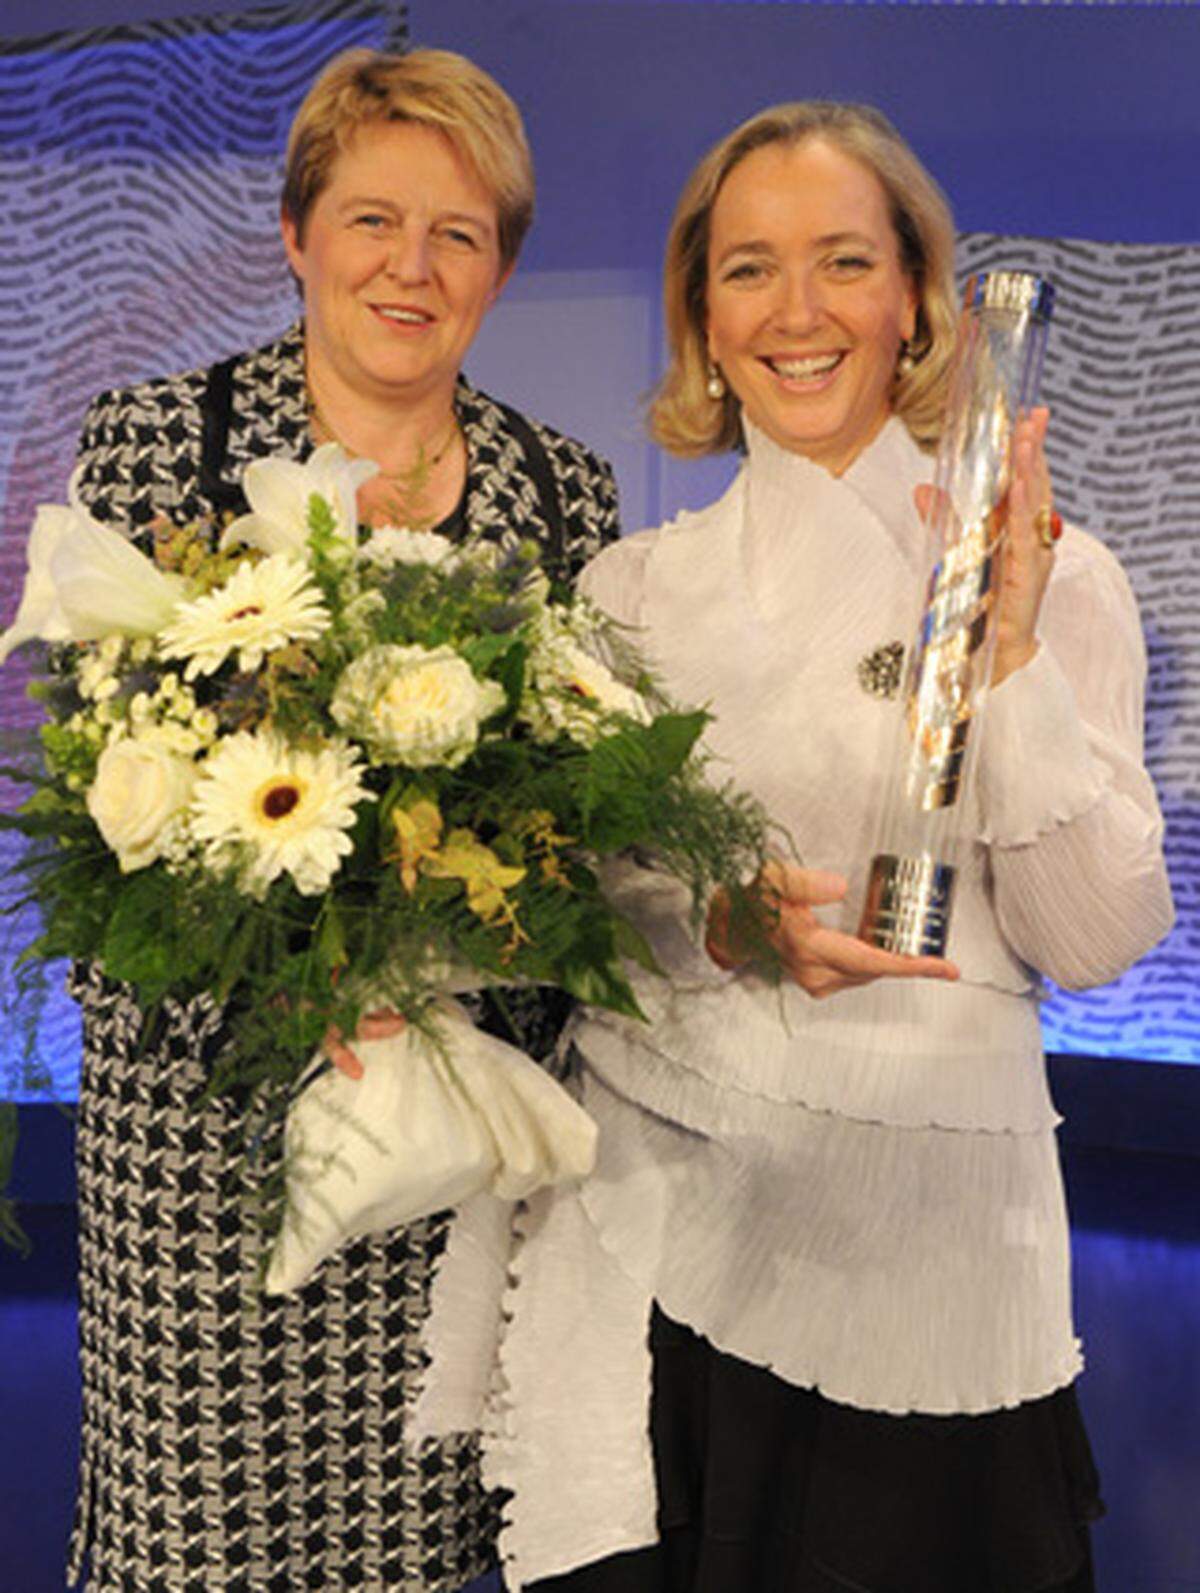 Agnes Husslein, Chefin der Österreichischen Galerie Belvedere, erhielt die Austria'08-Trophäe in der Sparte Kulturmanagement.